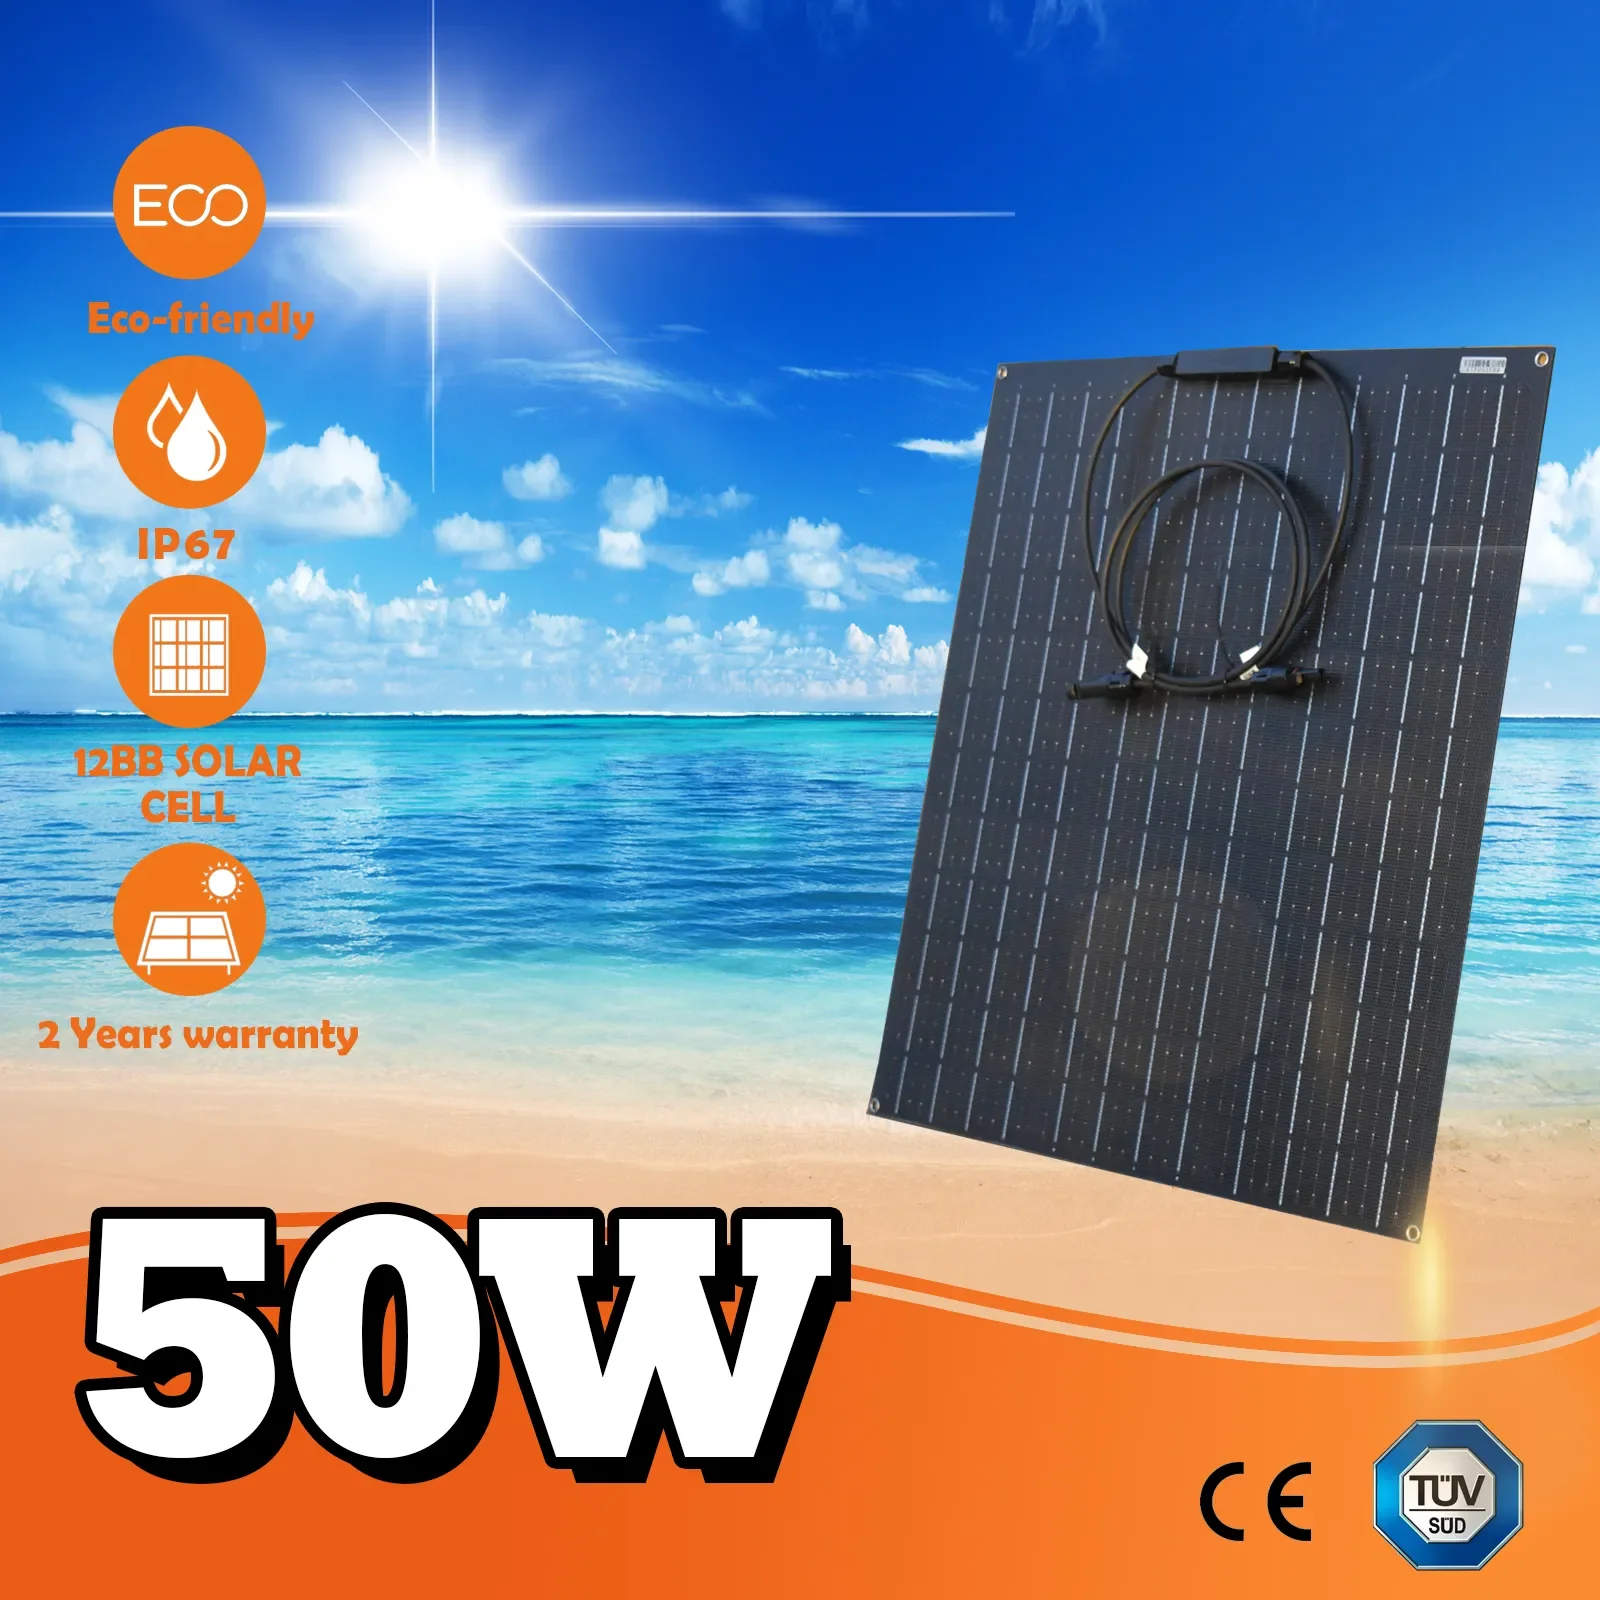 

Гибкая монокристаллическая солнечная панель ETFE, 50 Вт, 100 Вт, 12 В, комплект батарей для морских кемпингов, лодок, домов на колесах